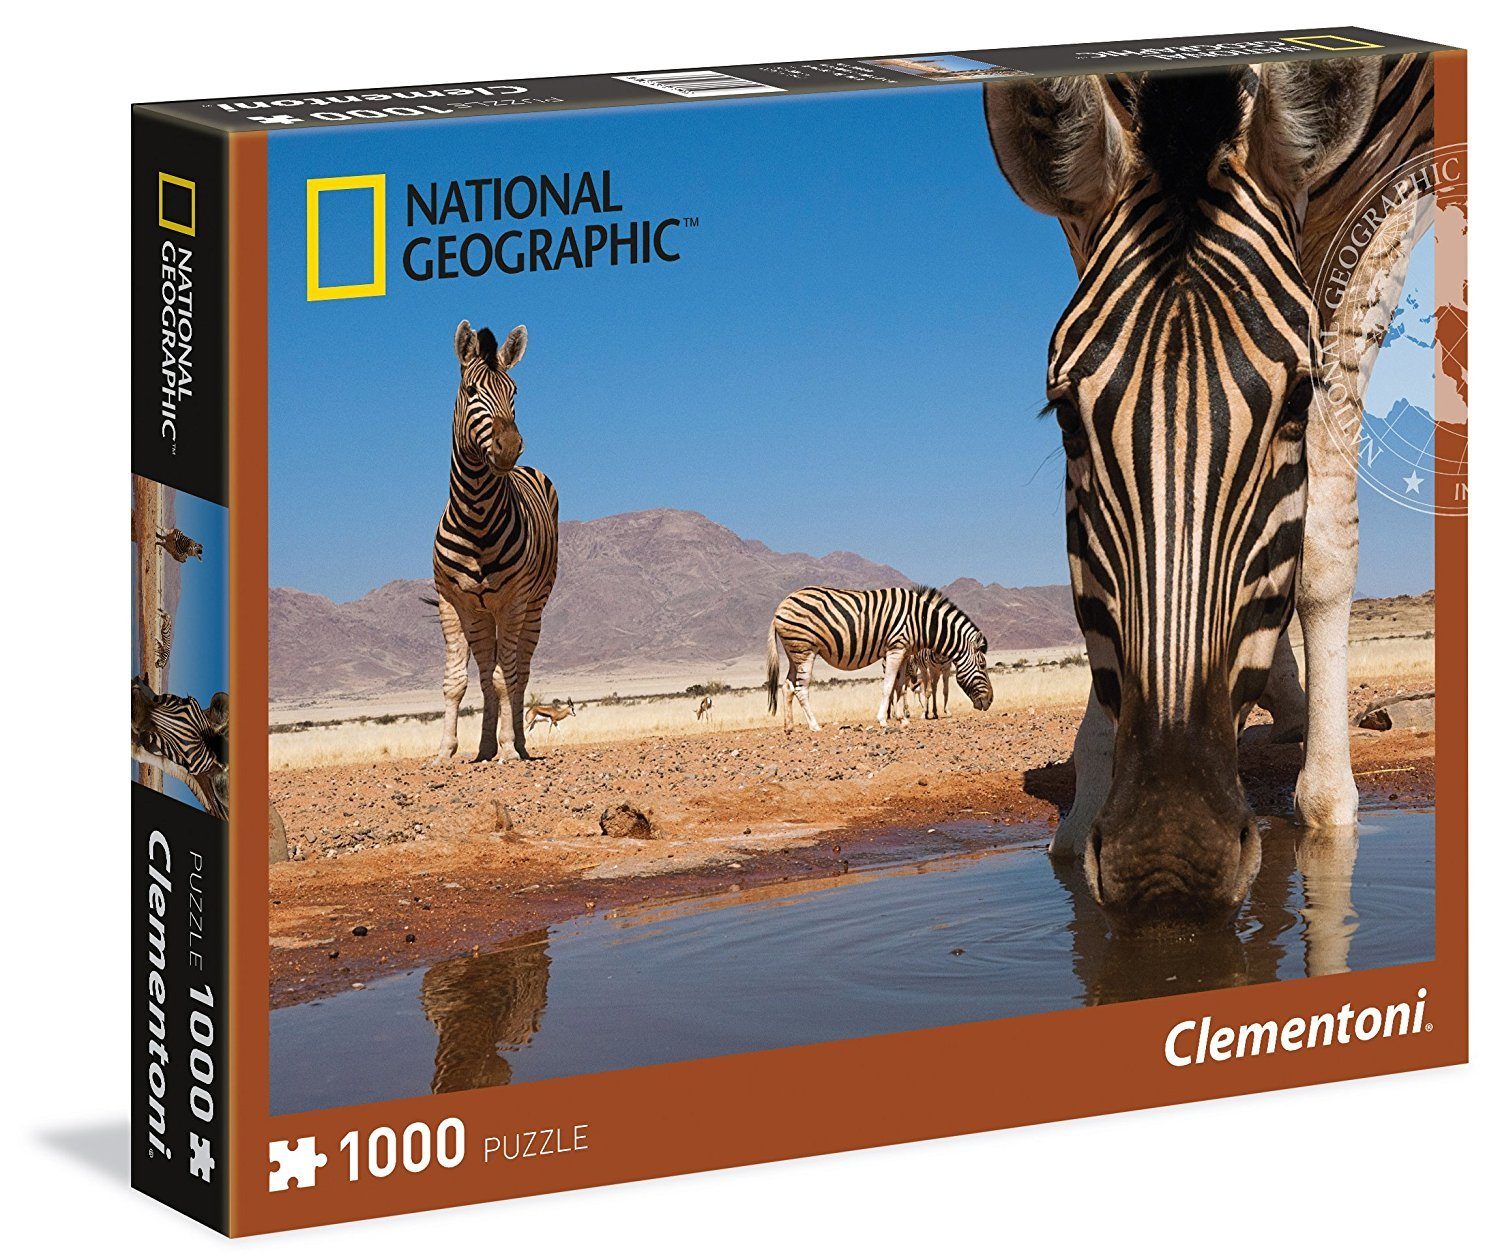 Clementoni® Puzzle National Geographic Puzzle Zebra trinkt an einem Wasserloch 1000 Teile, 1000 Puzzleteile